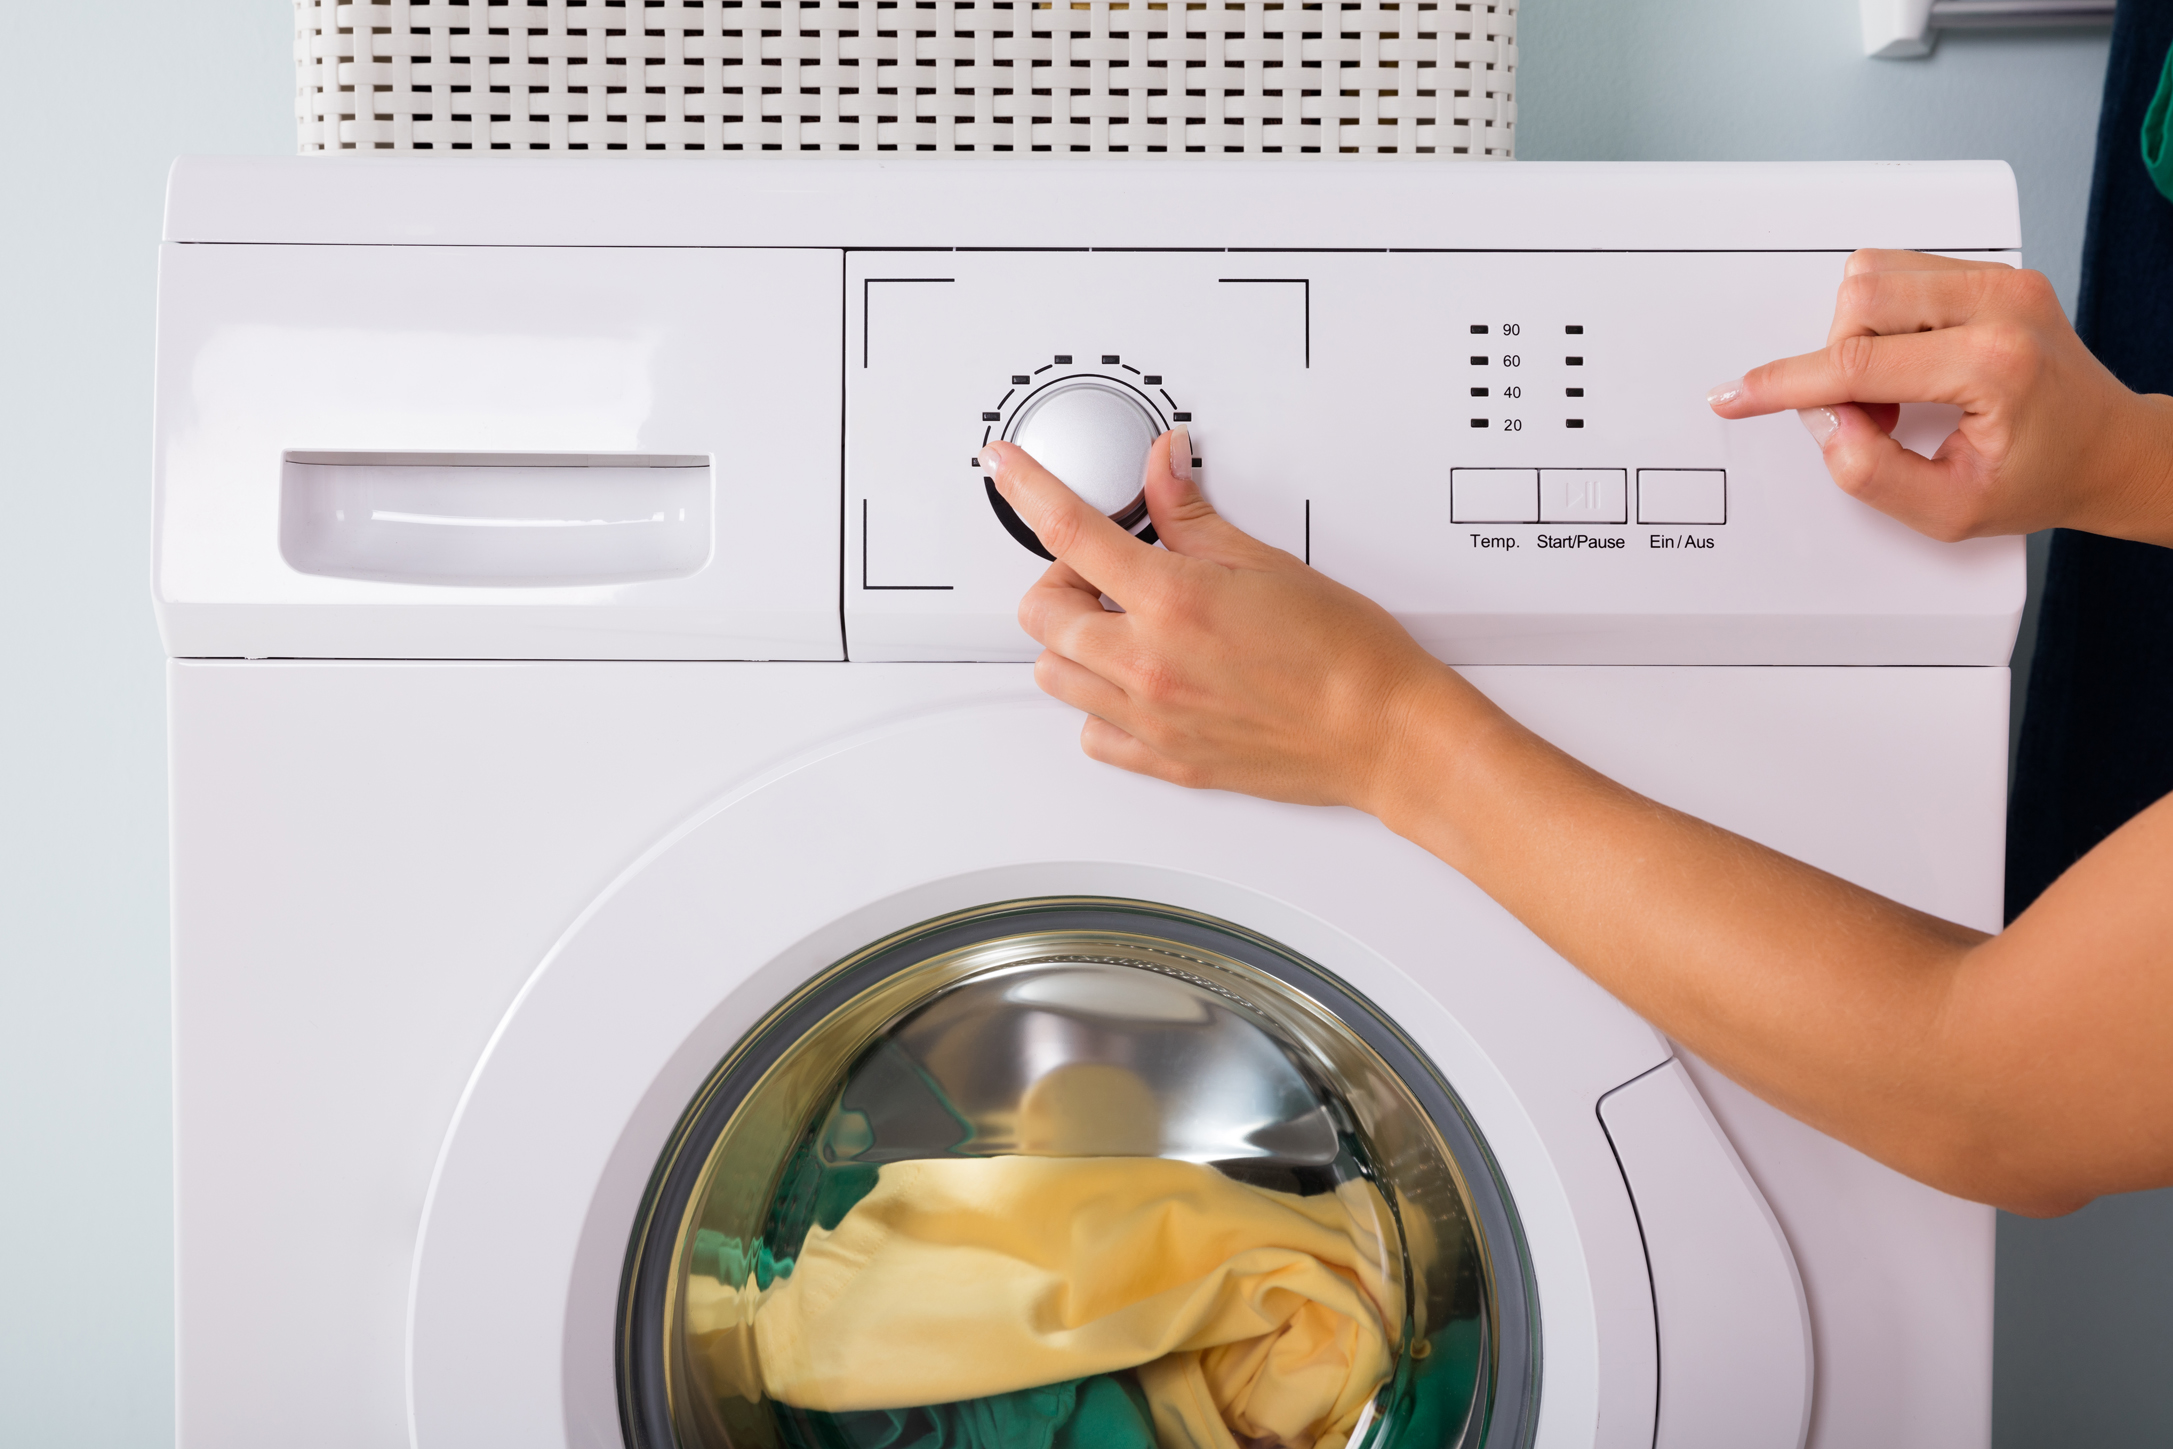 [Будет чисто] Как стирать мягкие игрушки в стиральной машине и вручную?